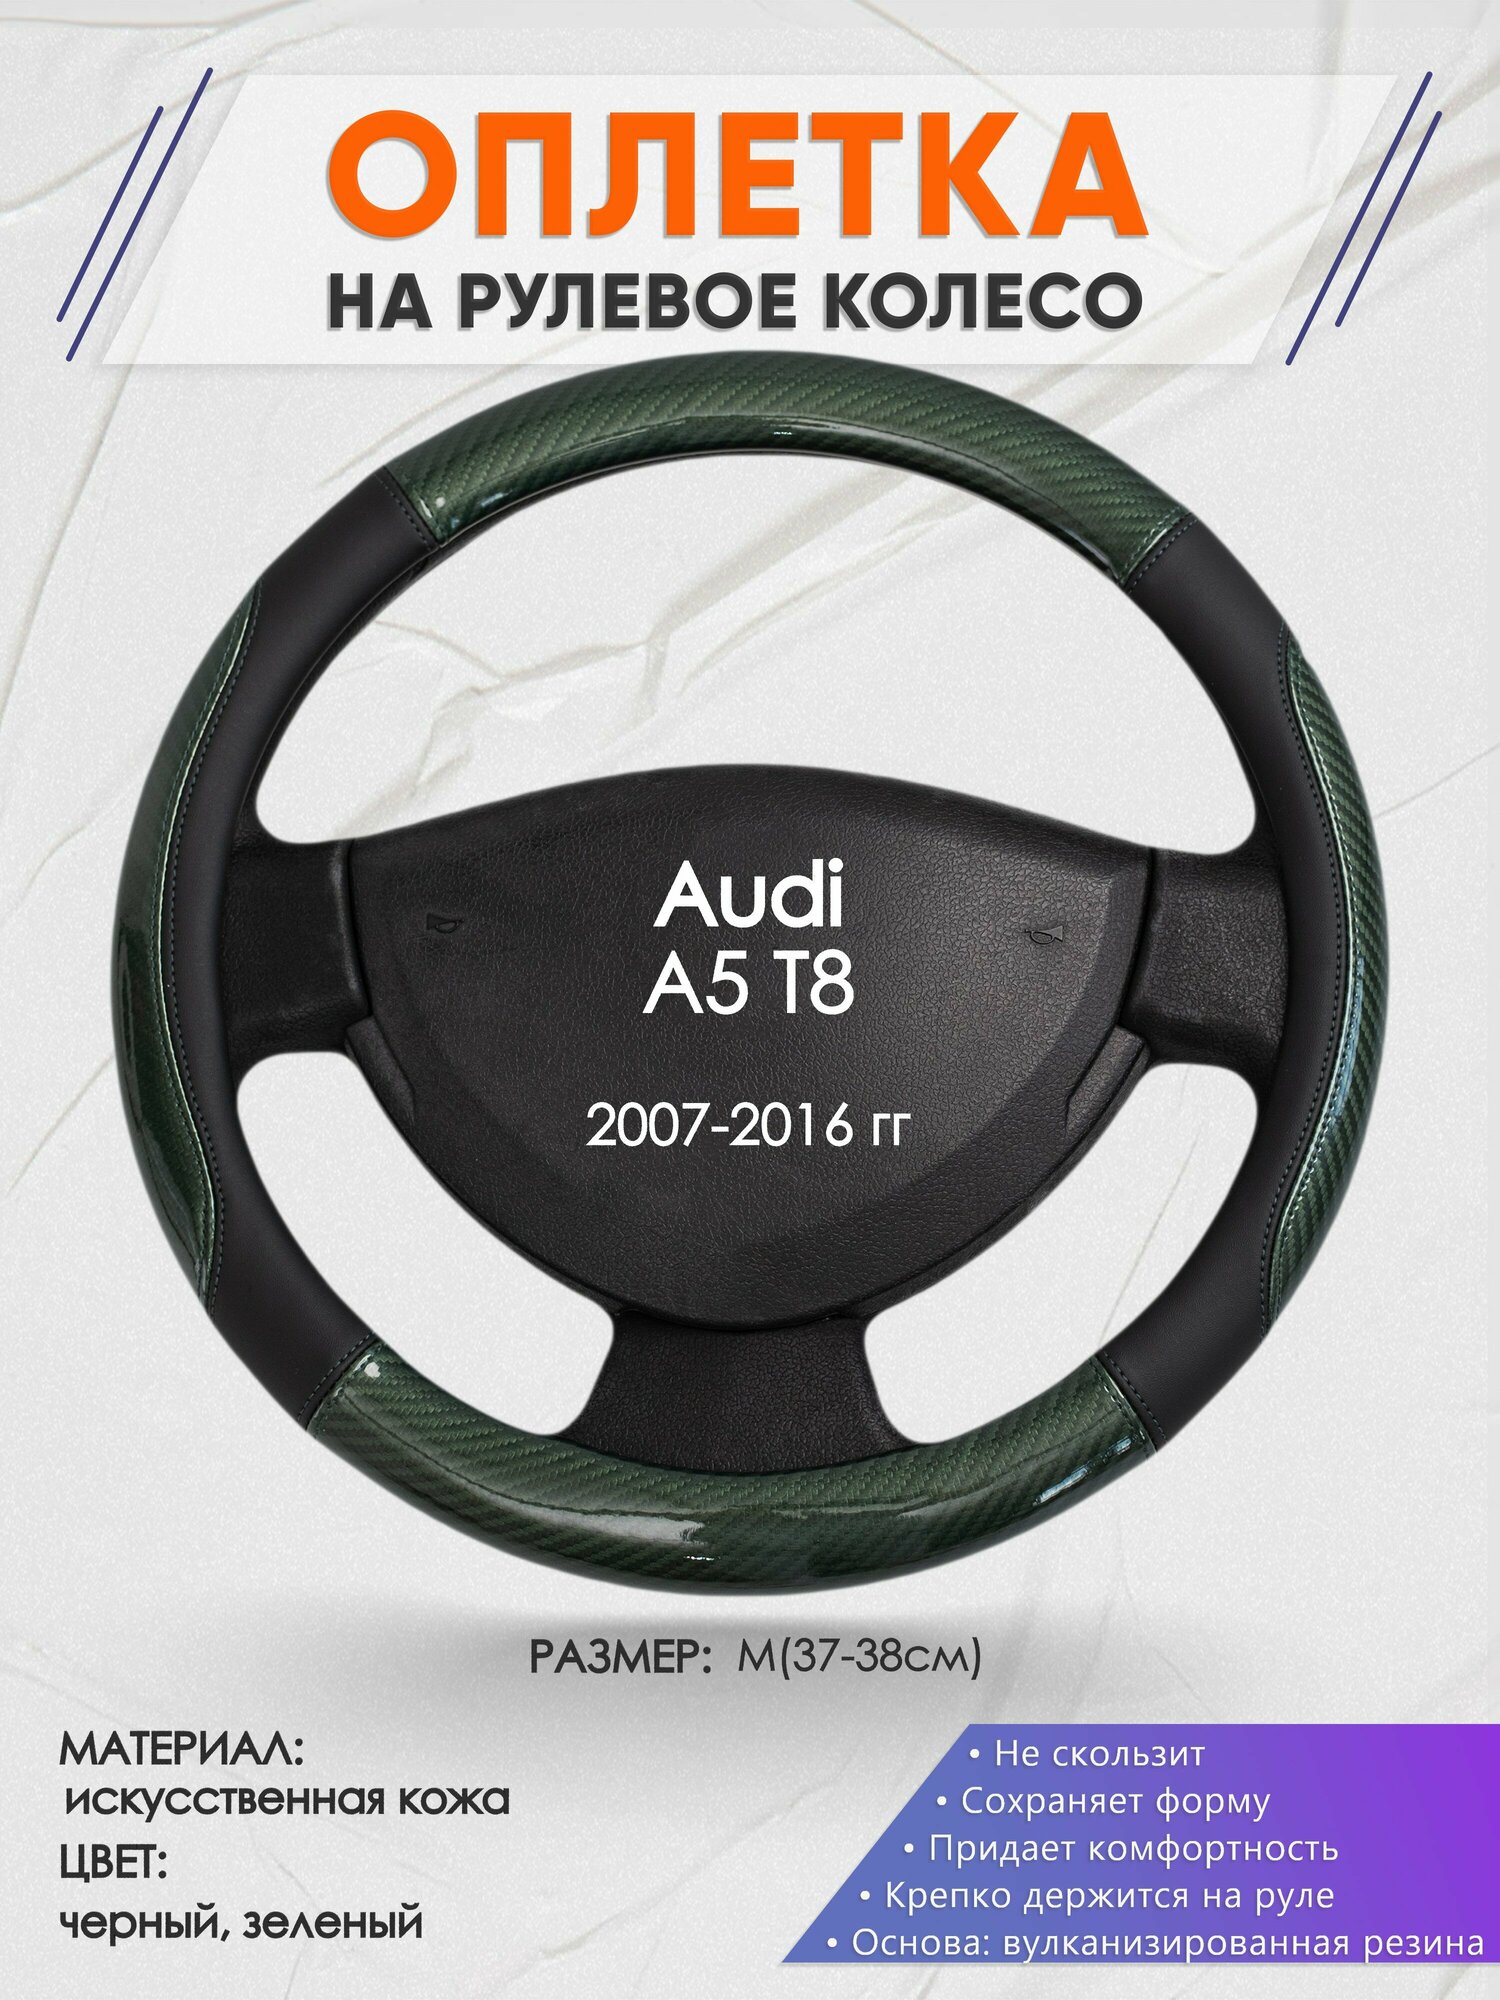 Оплетка на руль для Audi A5 T8(Ауди А4 т8) 2007-2016 M(37-38см) Искусственная кожа 65